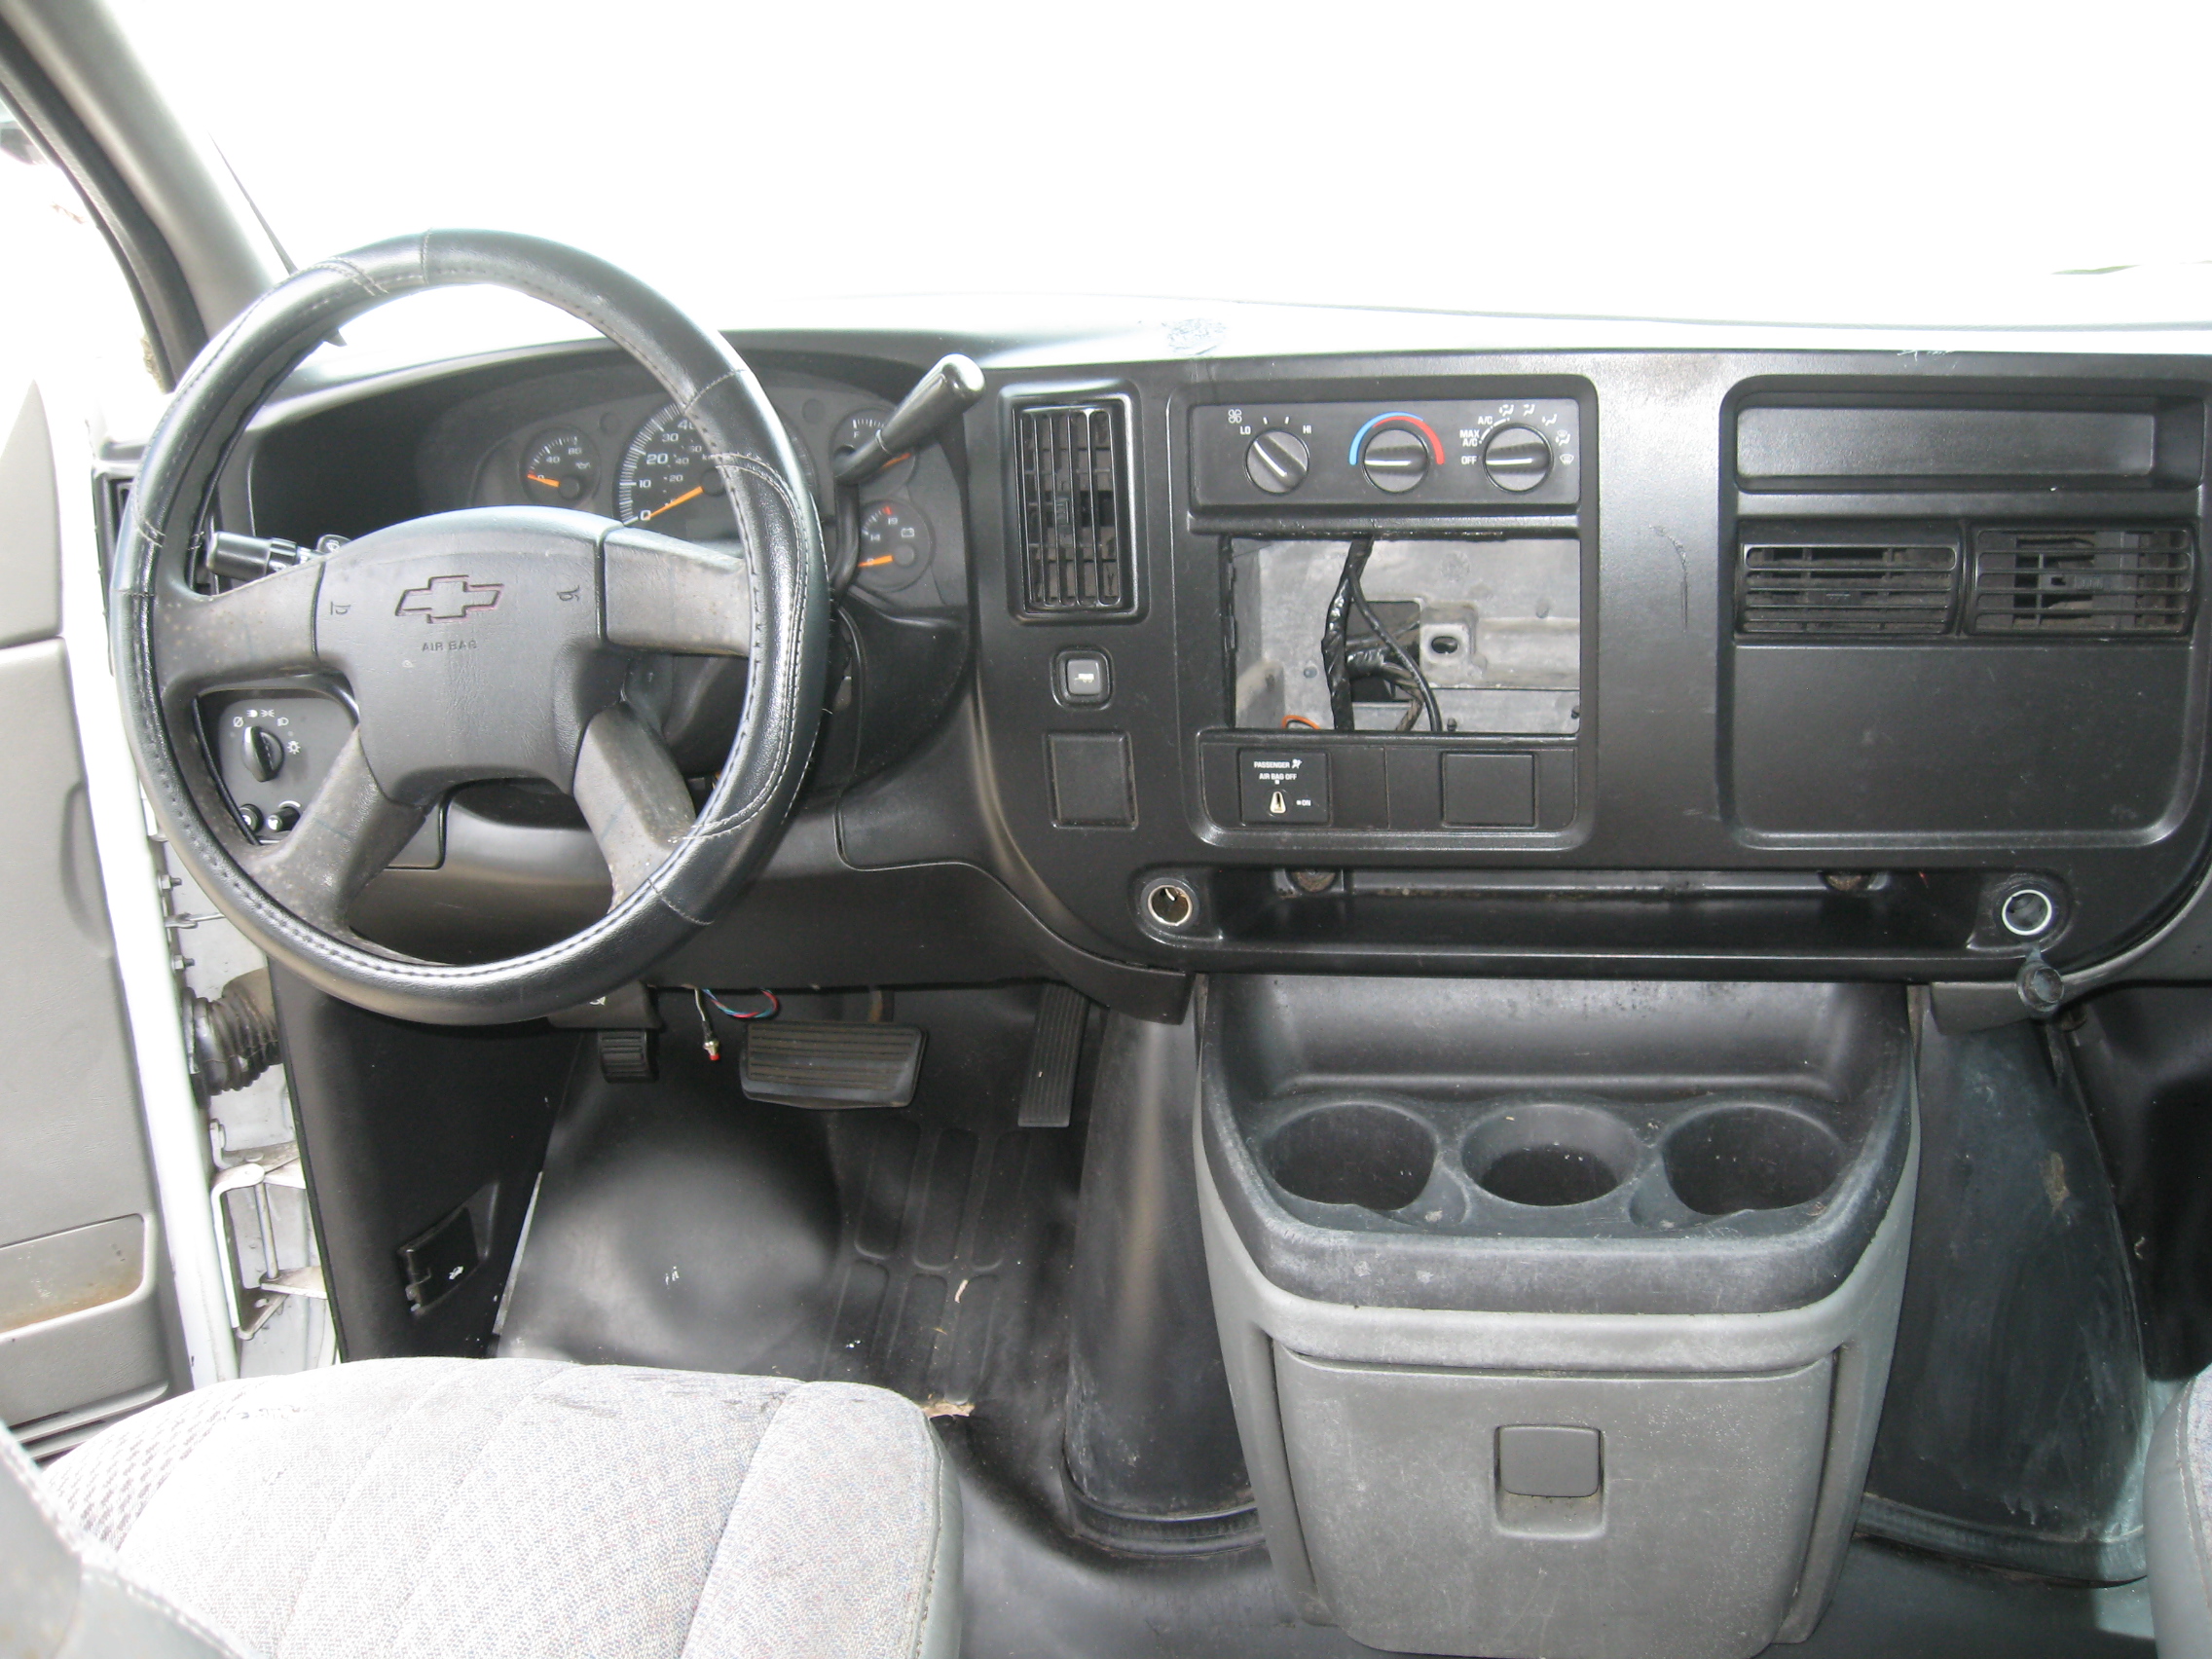 2007 Chevy G2500 IMG_0316